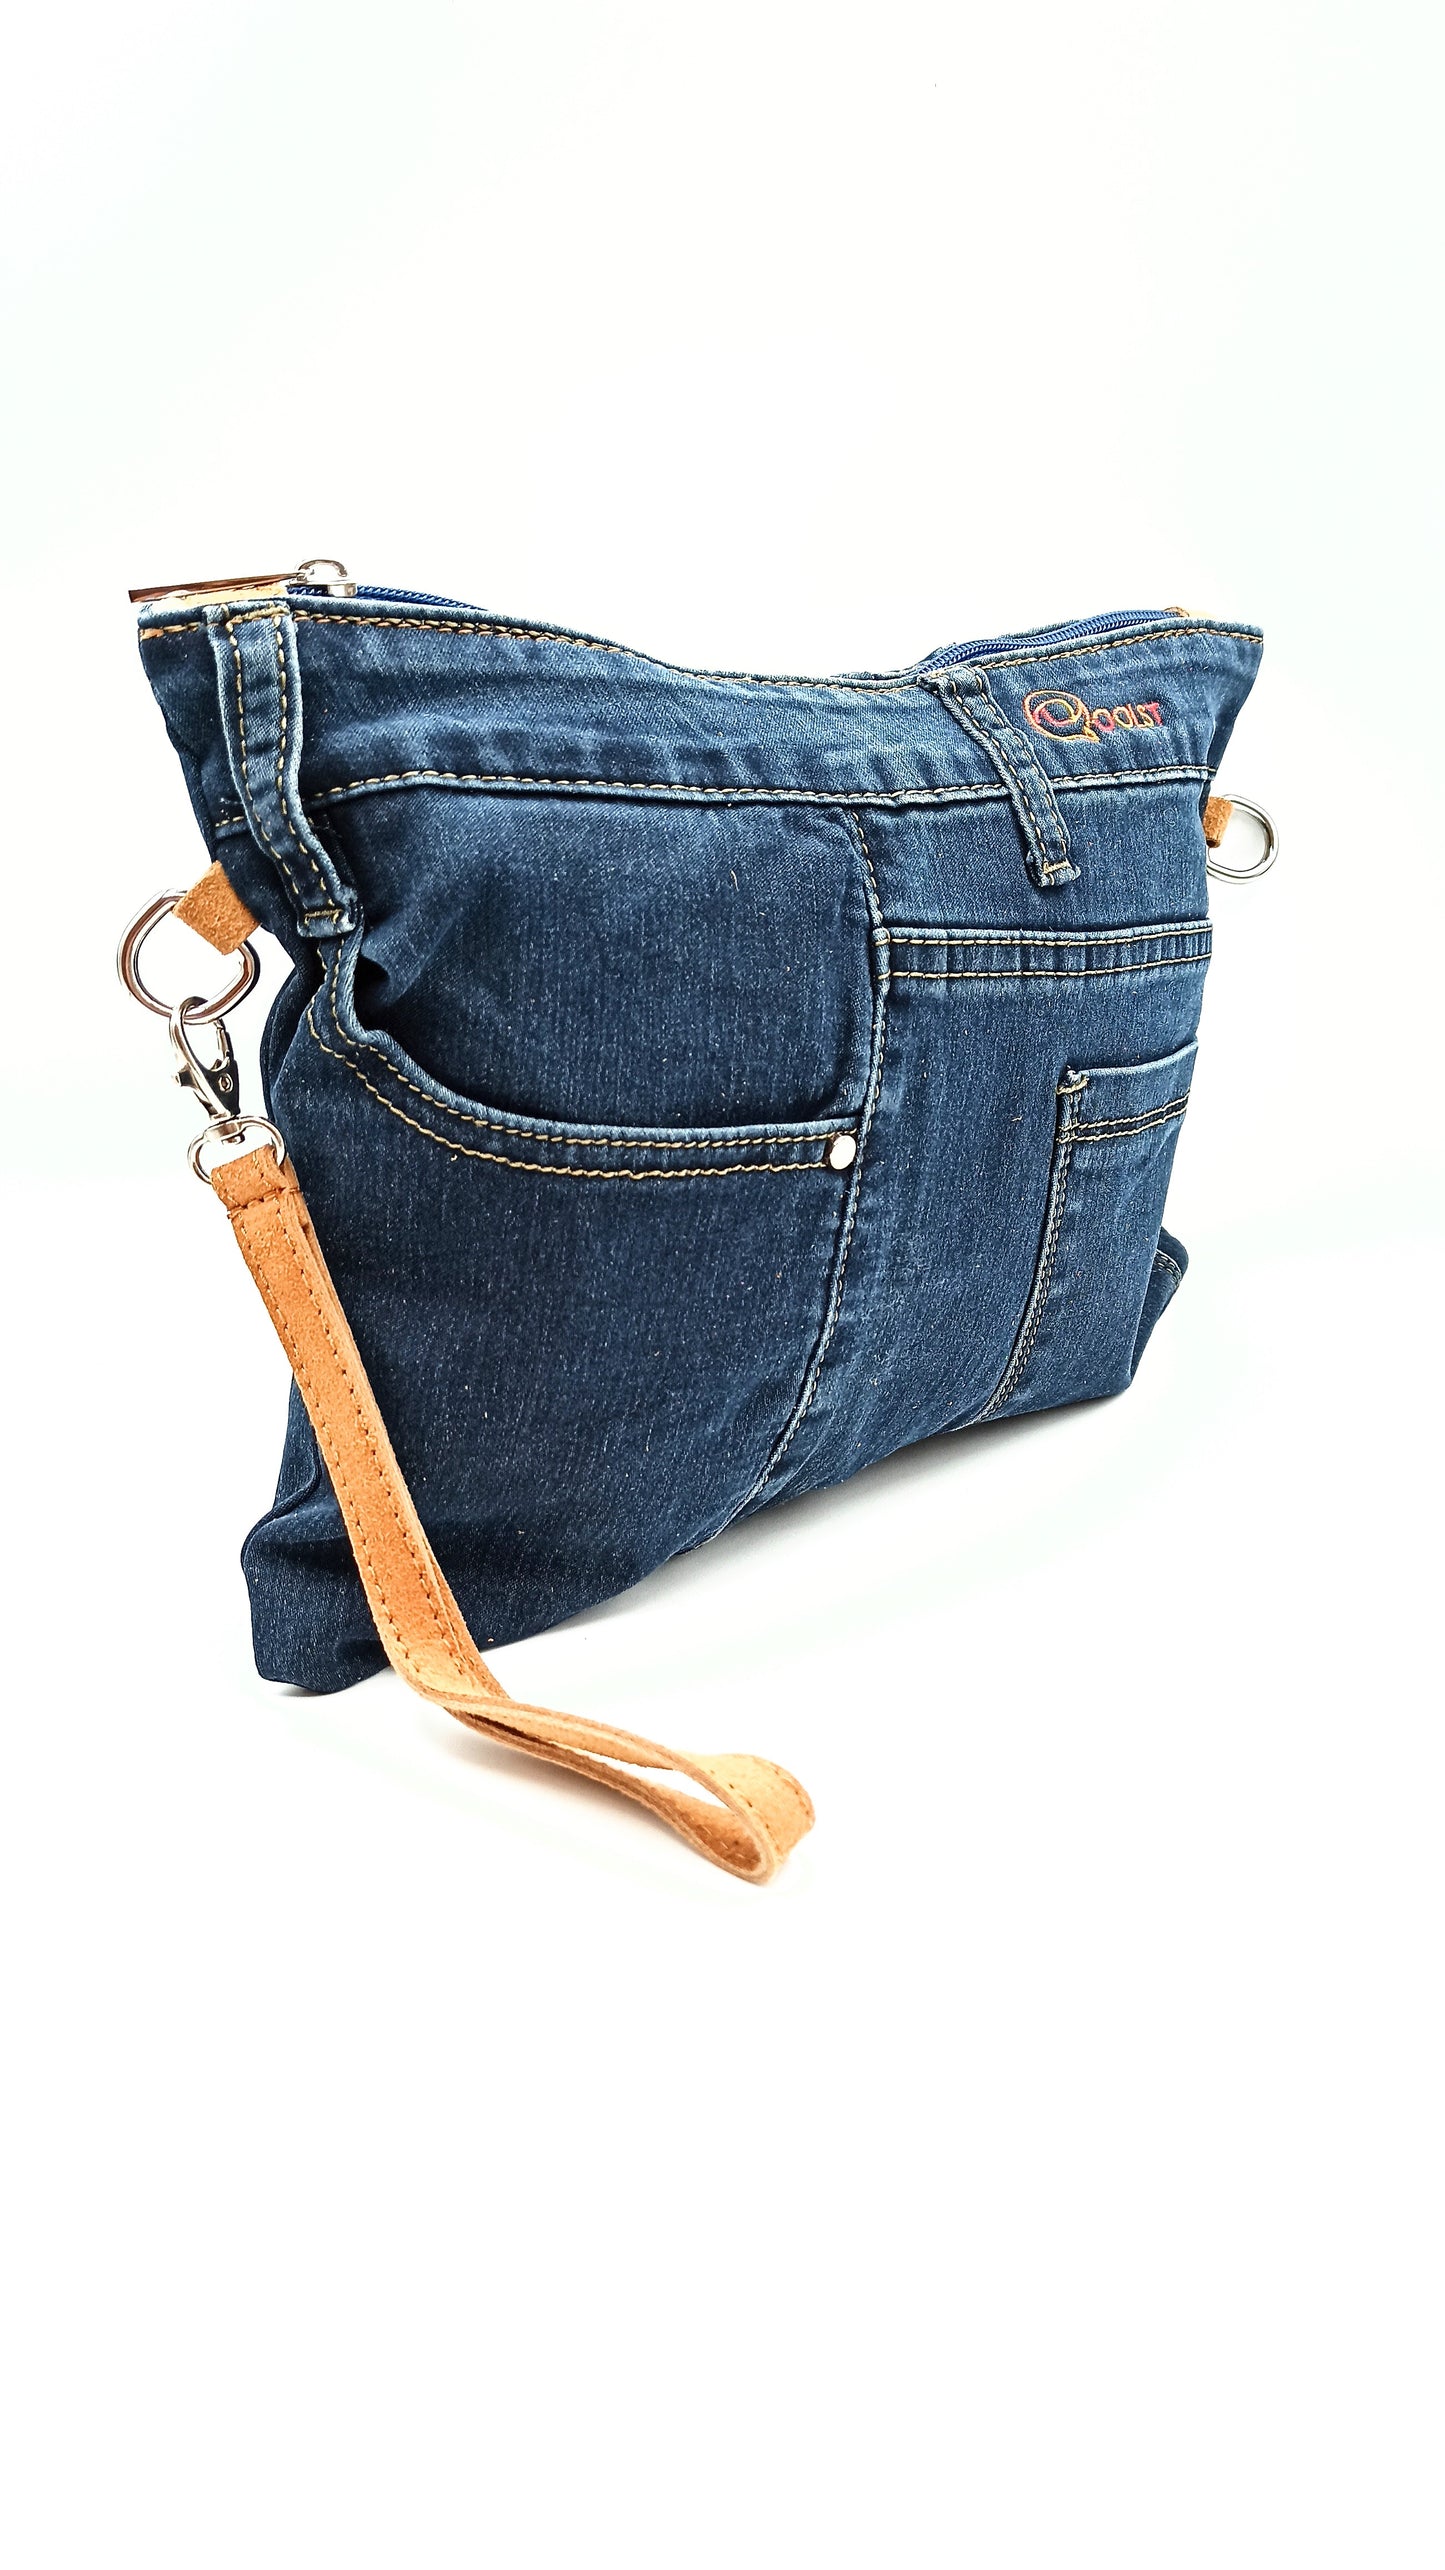 Qoolst Jeans sac en jean pour femmes et hommes, sac à main et sac à bandoulière